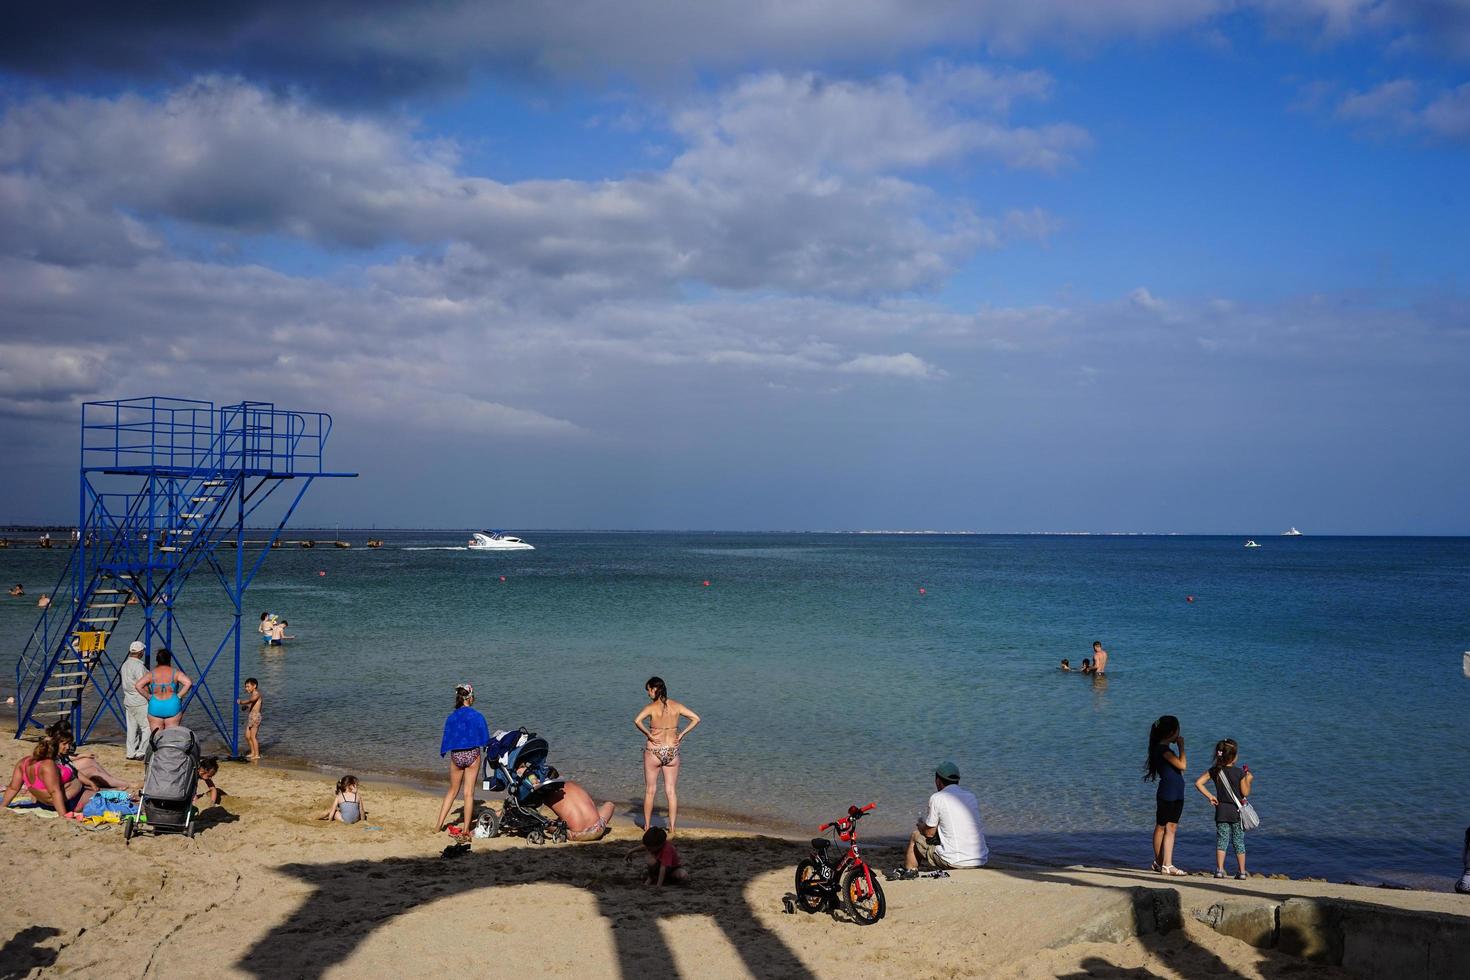 evpatoria, crimeia-20 de junho de 2015 - passeio da cidade à beira-mar com praia e veranistas. foto